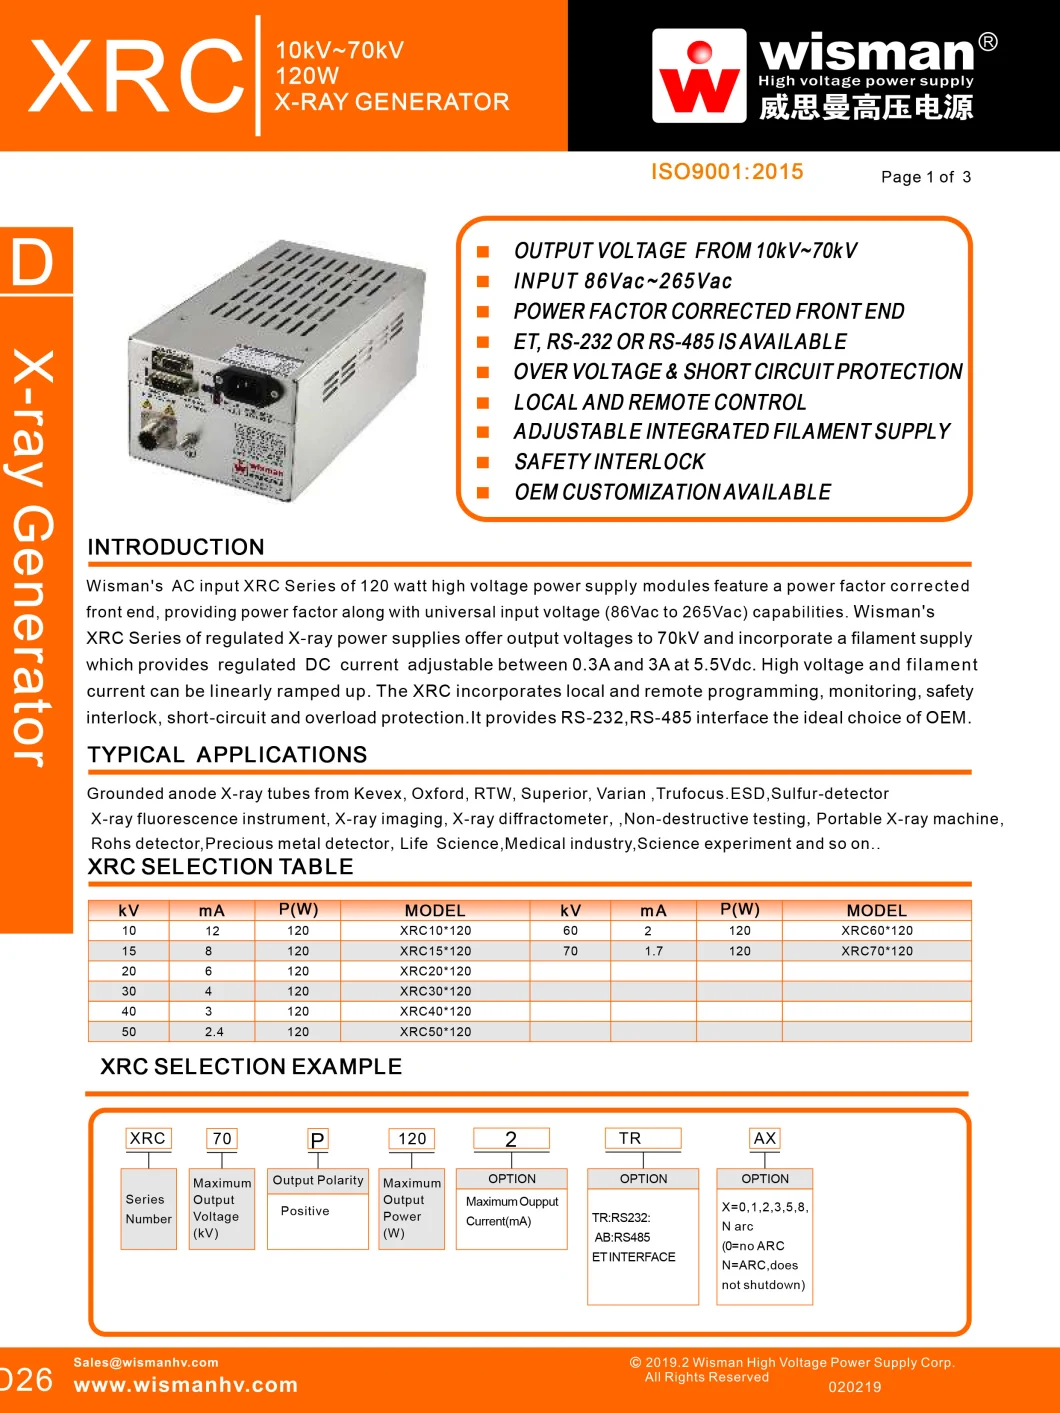 XRC Series X-ray Generator For Portable X-ray Machine (10kV-70kV, 120W)